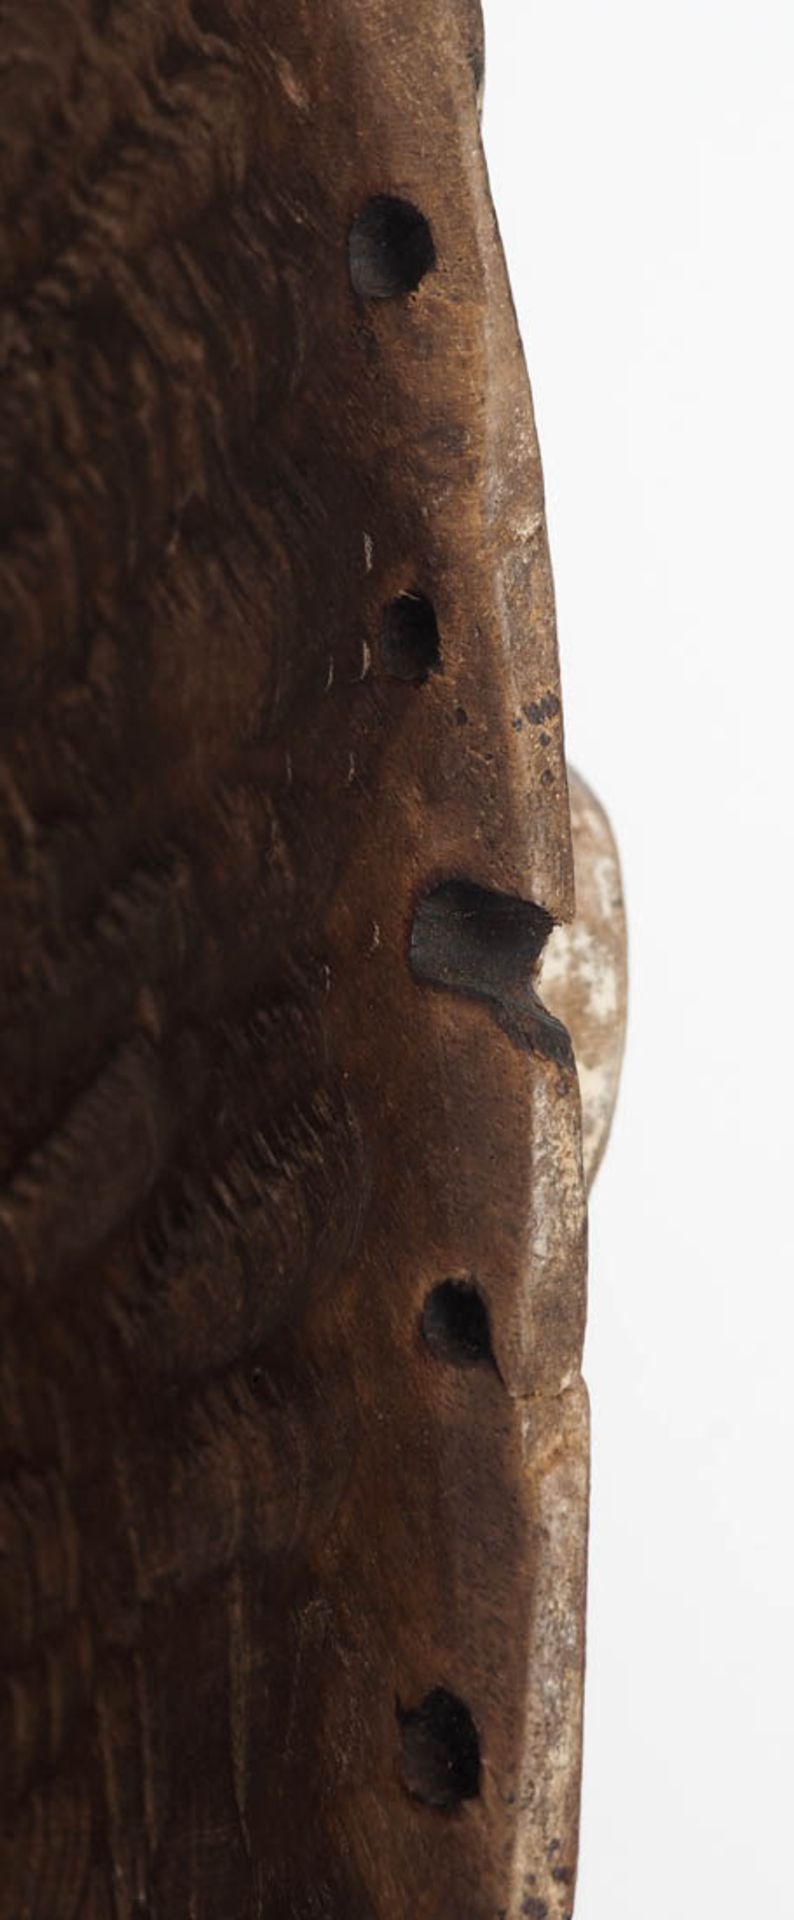 Maske des Mmwo-Geheimbundes, Ibo, Nigeria Holz, geschnitzt, partiell geschwärzt bzw. weiß gekalkt. - Bild 5 aus 5